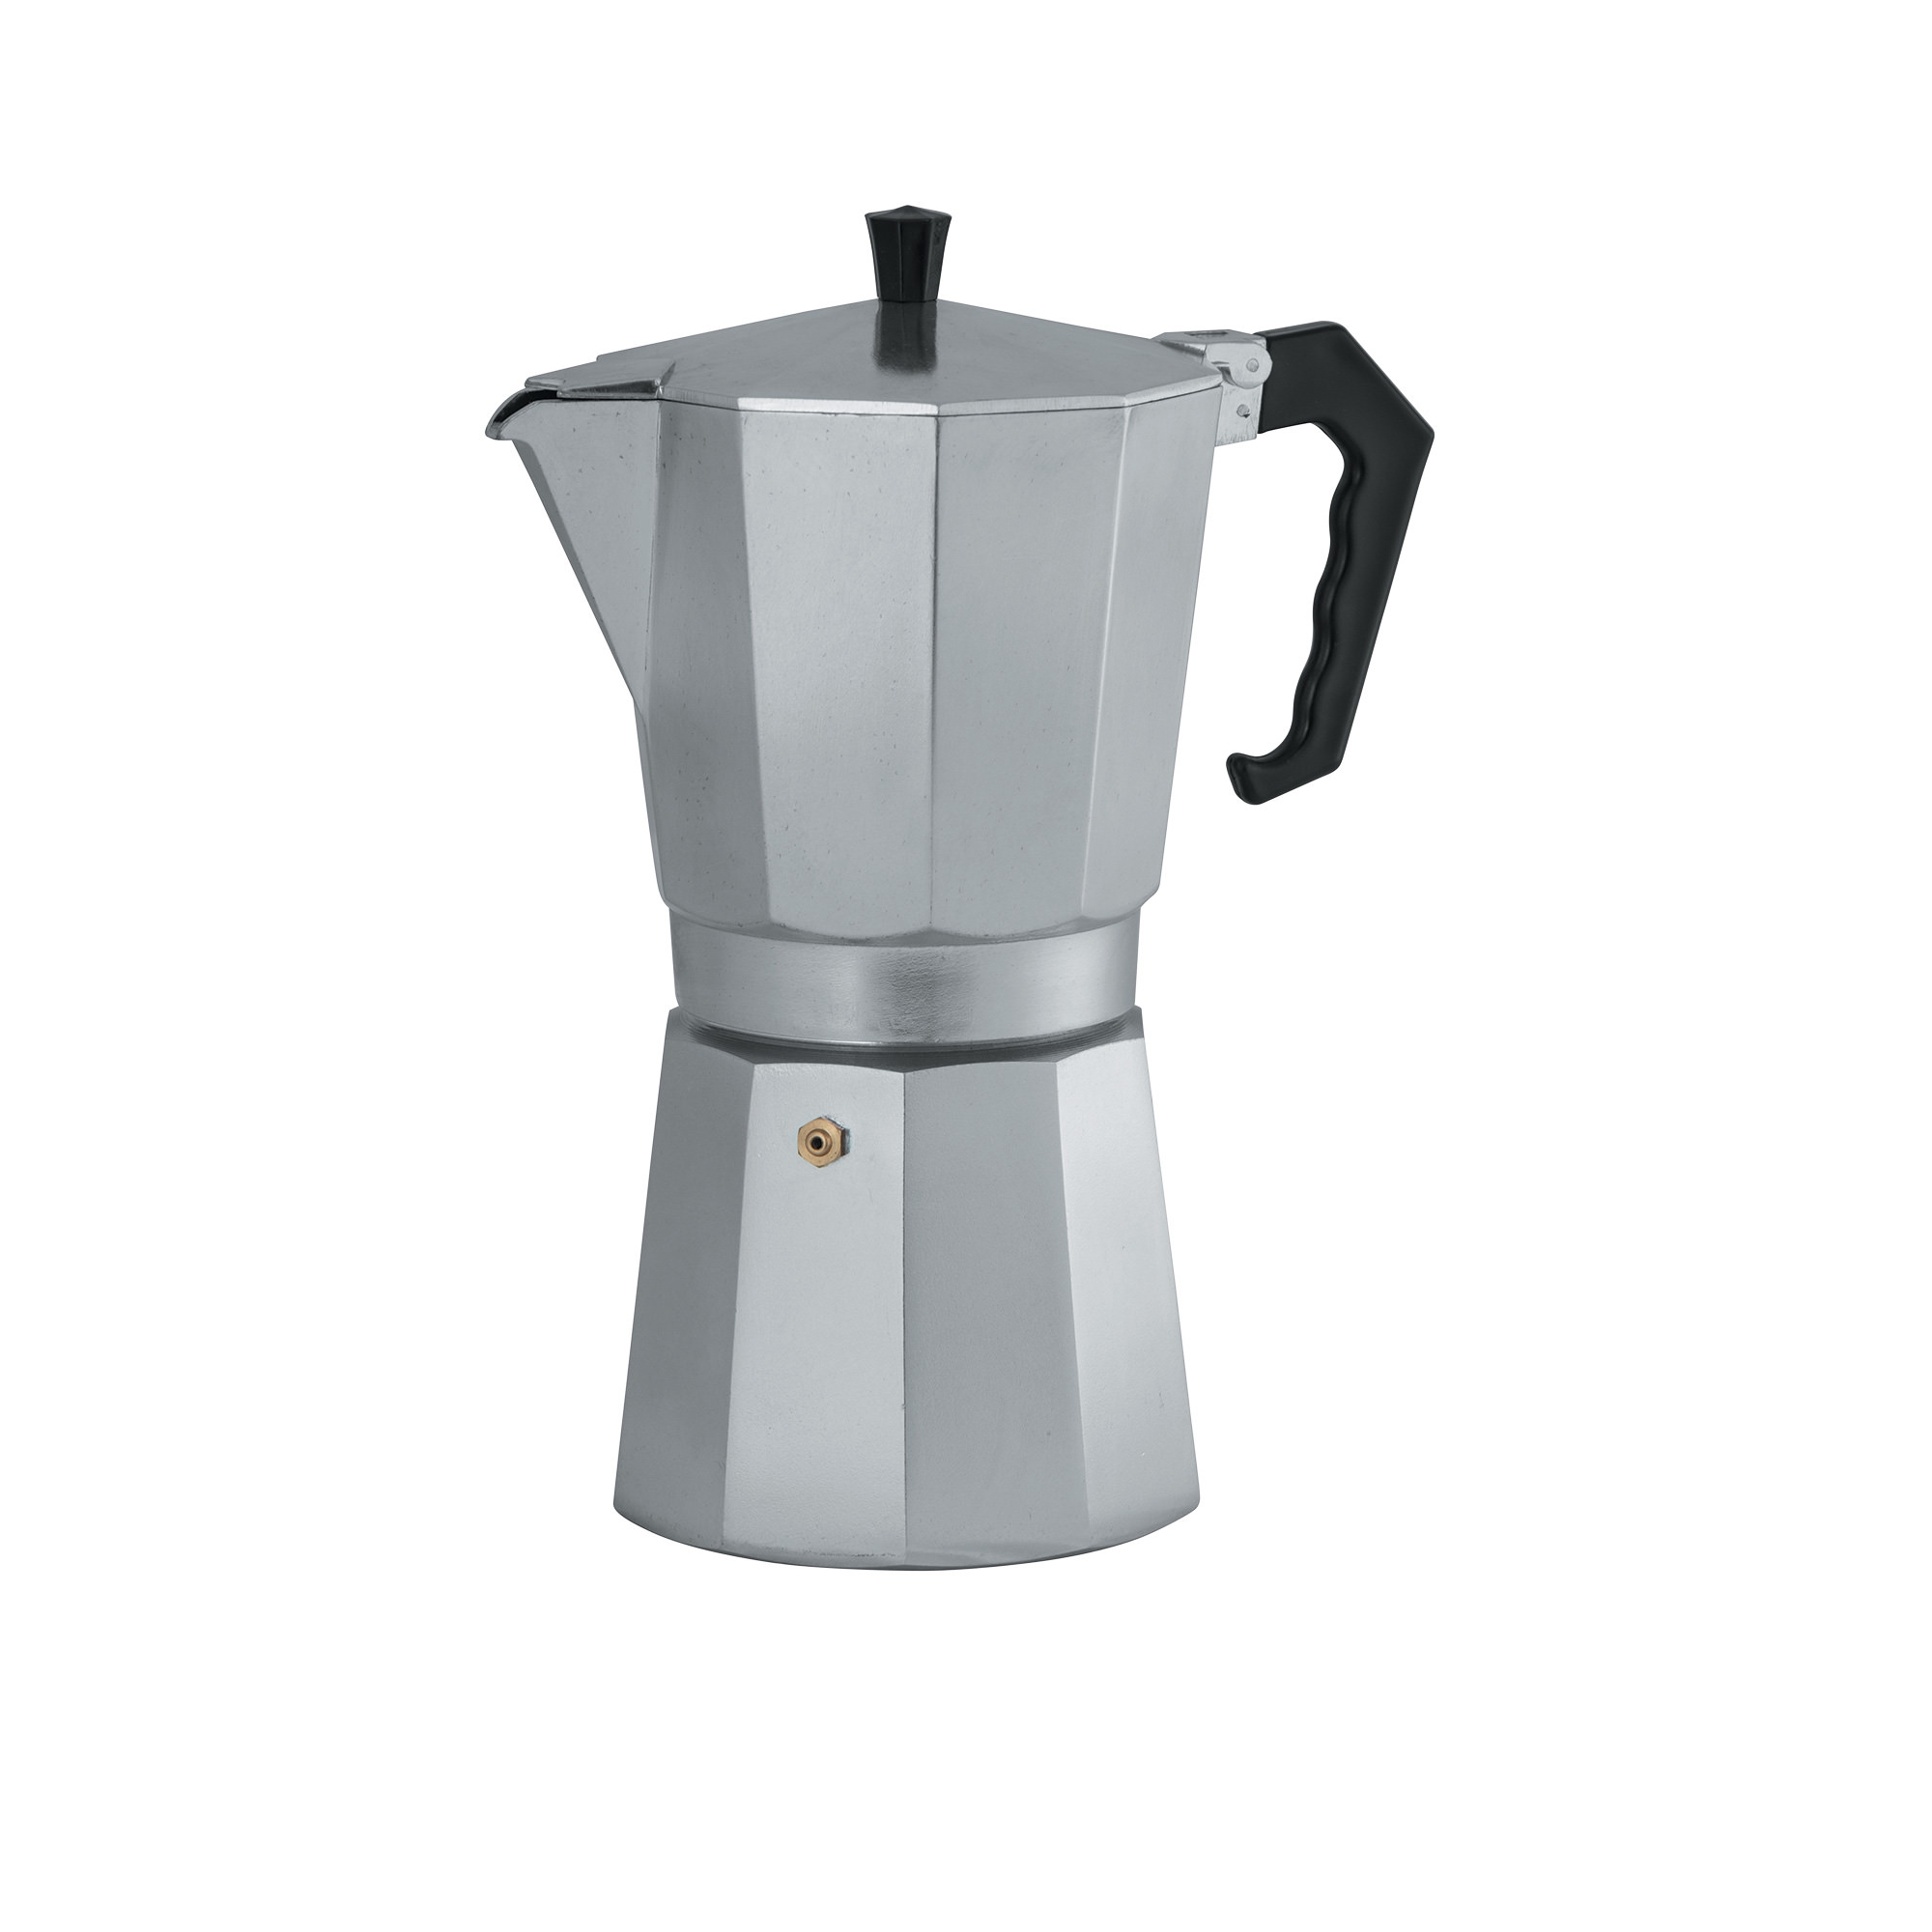 Avanti ClassicPro Espresso Coffee Maker 9 Cup Image 1